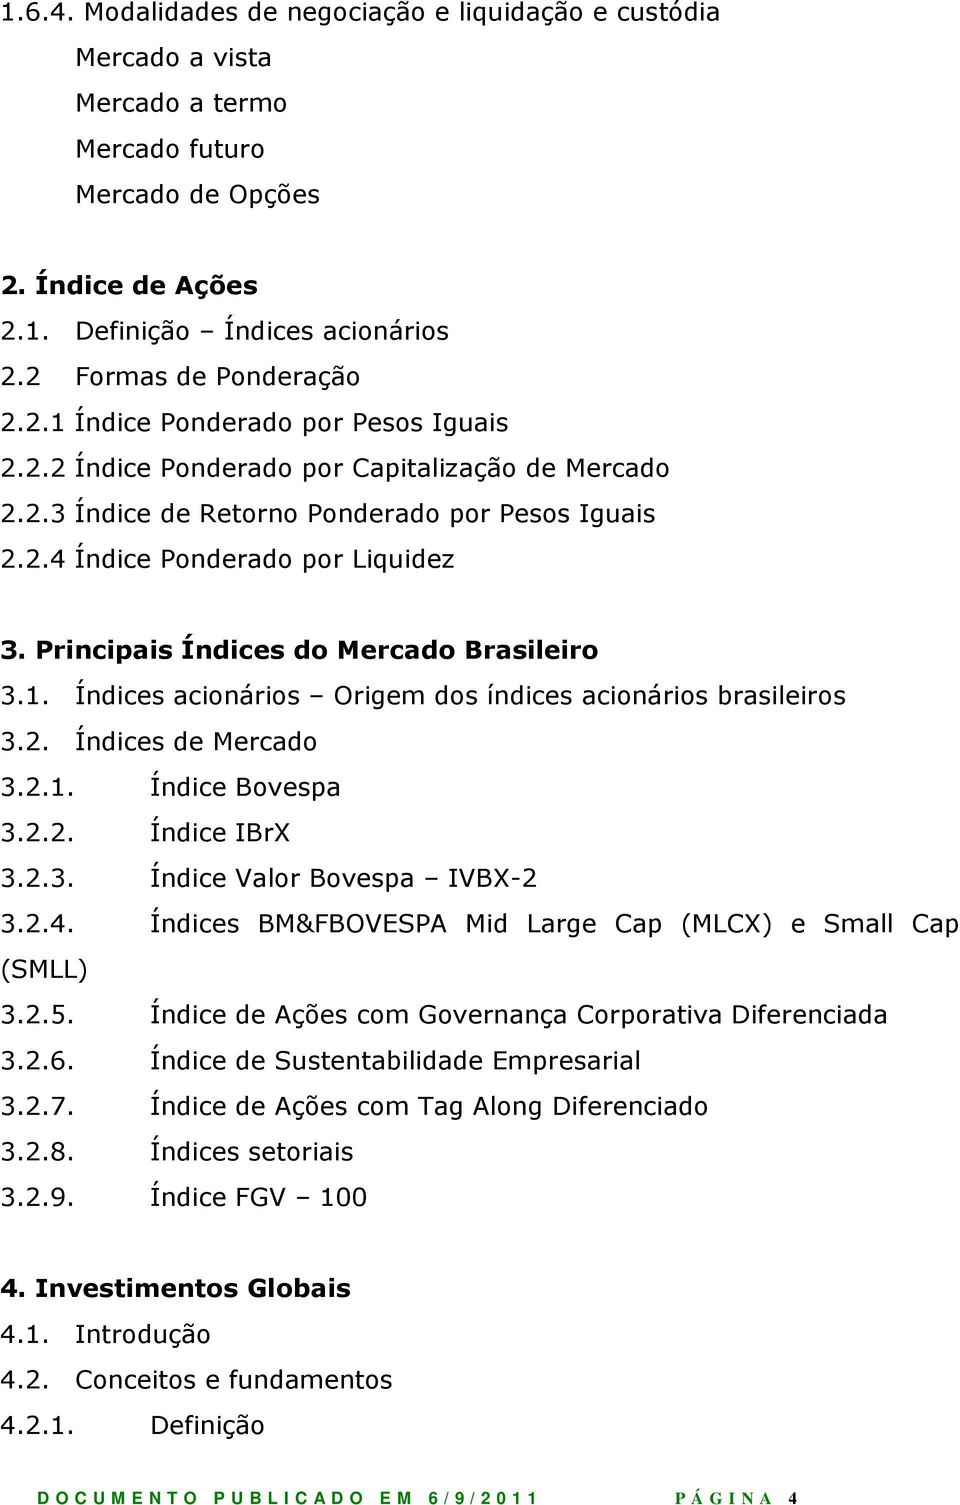 Principais Índices do Mercado Brasileiro 3.1. Índices acionários Origem dos índices acionários brasileiros 3.2. Índices de Mercado 3.2.1. Índice Bovespa 3.2.2. Índice IBrX 3.2.3. Índice Valor Bovespa IVBX-2 3.